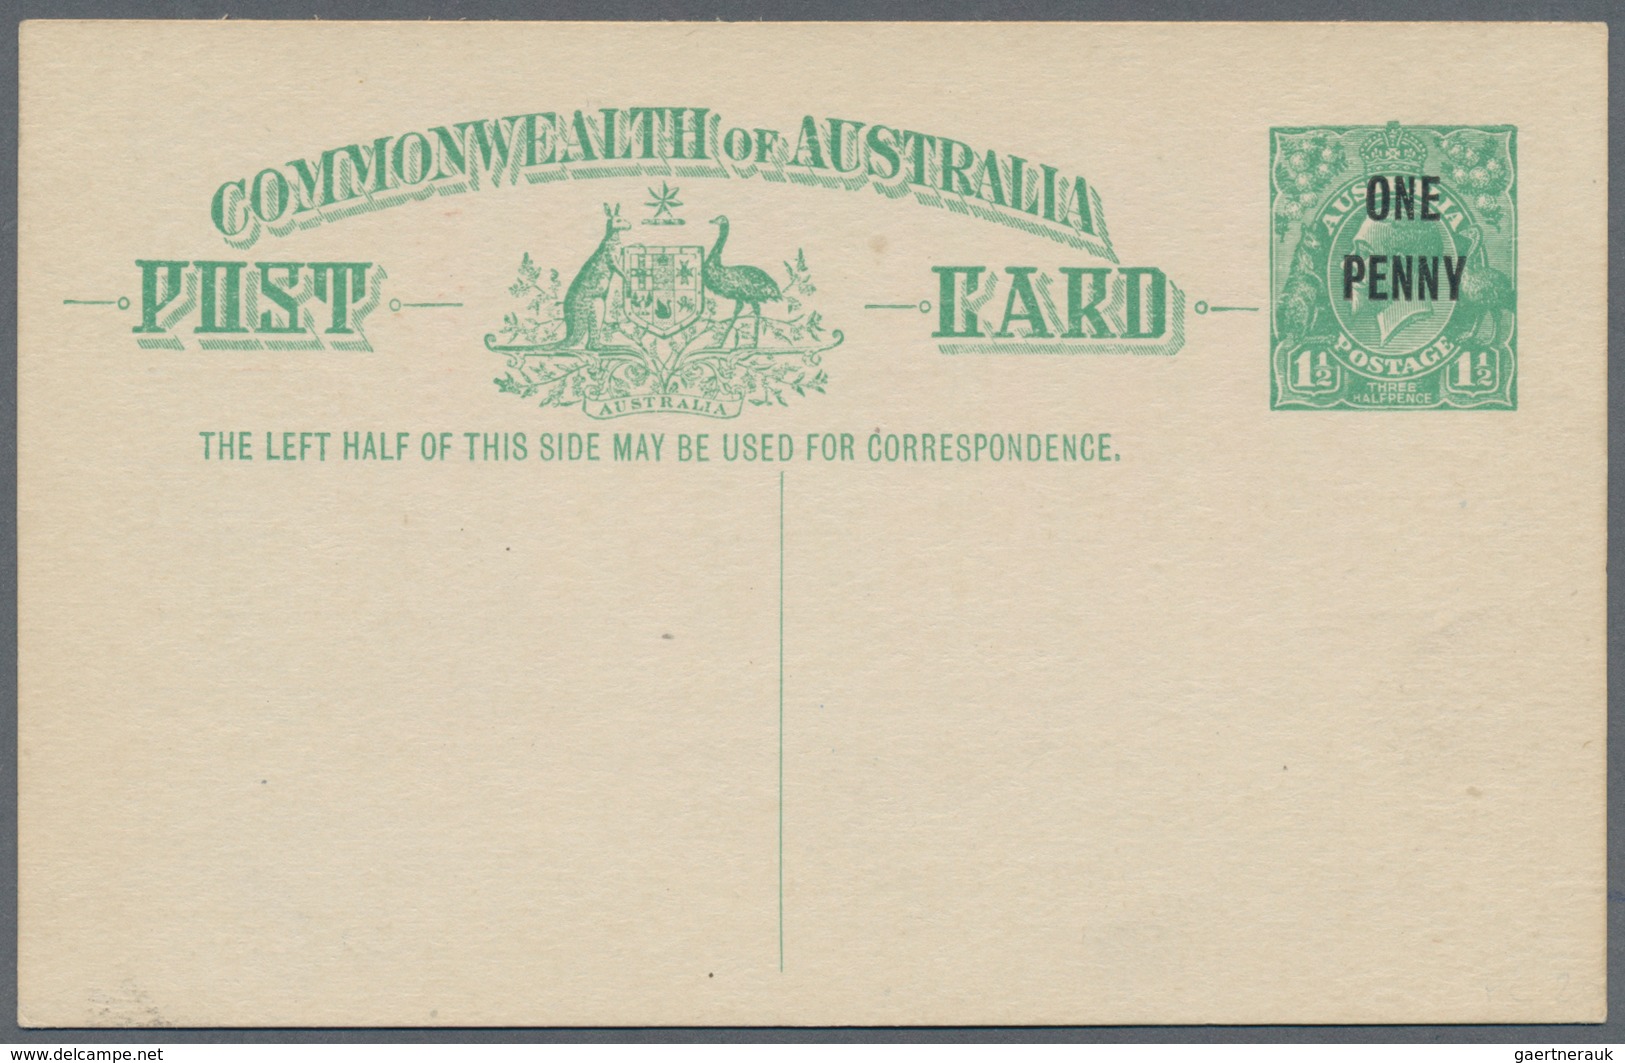 Australien - Ganzsachen: 1923, four different postcards KGV 1½d. emerald-green and 1½d. brown both w